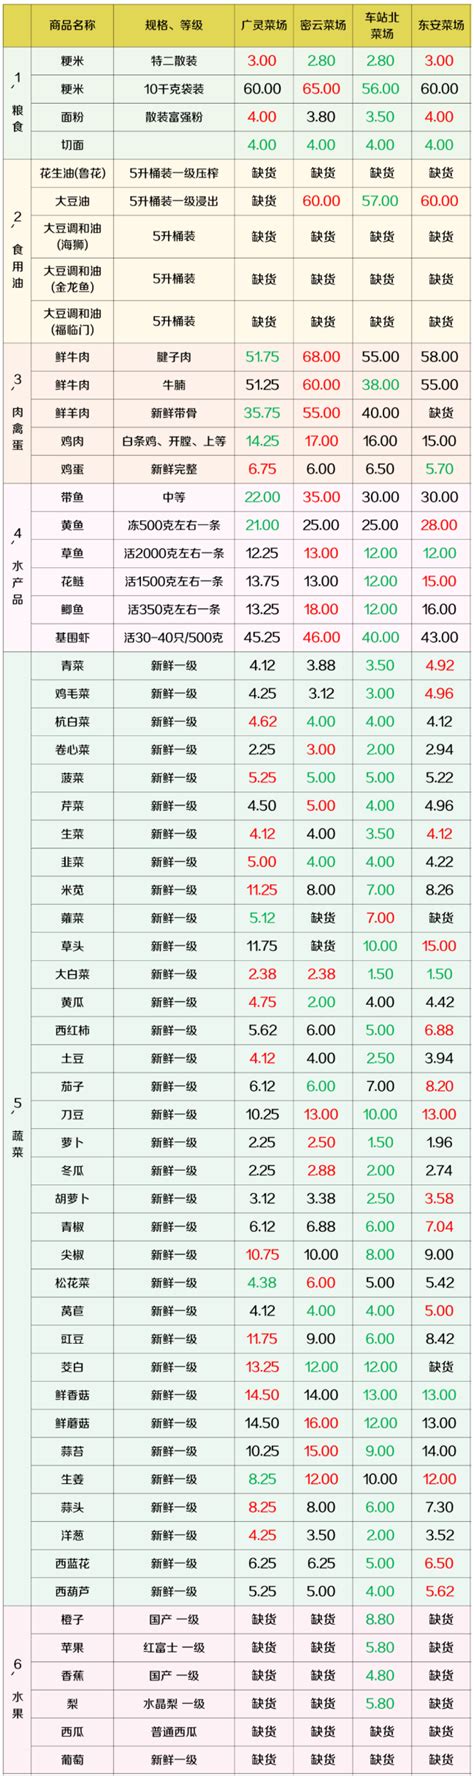 上海虹口区最新物价信息(4月8日发布) - 上海慢慢看